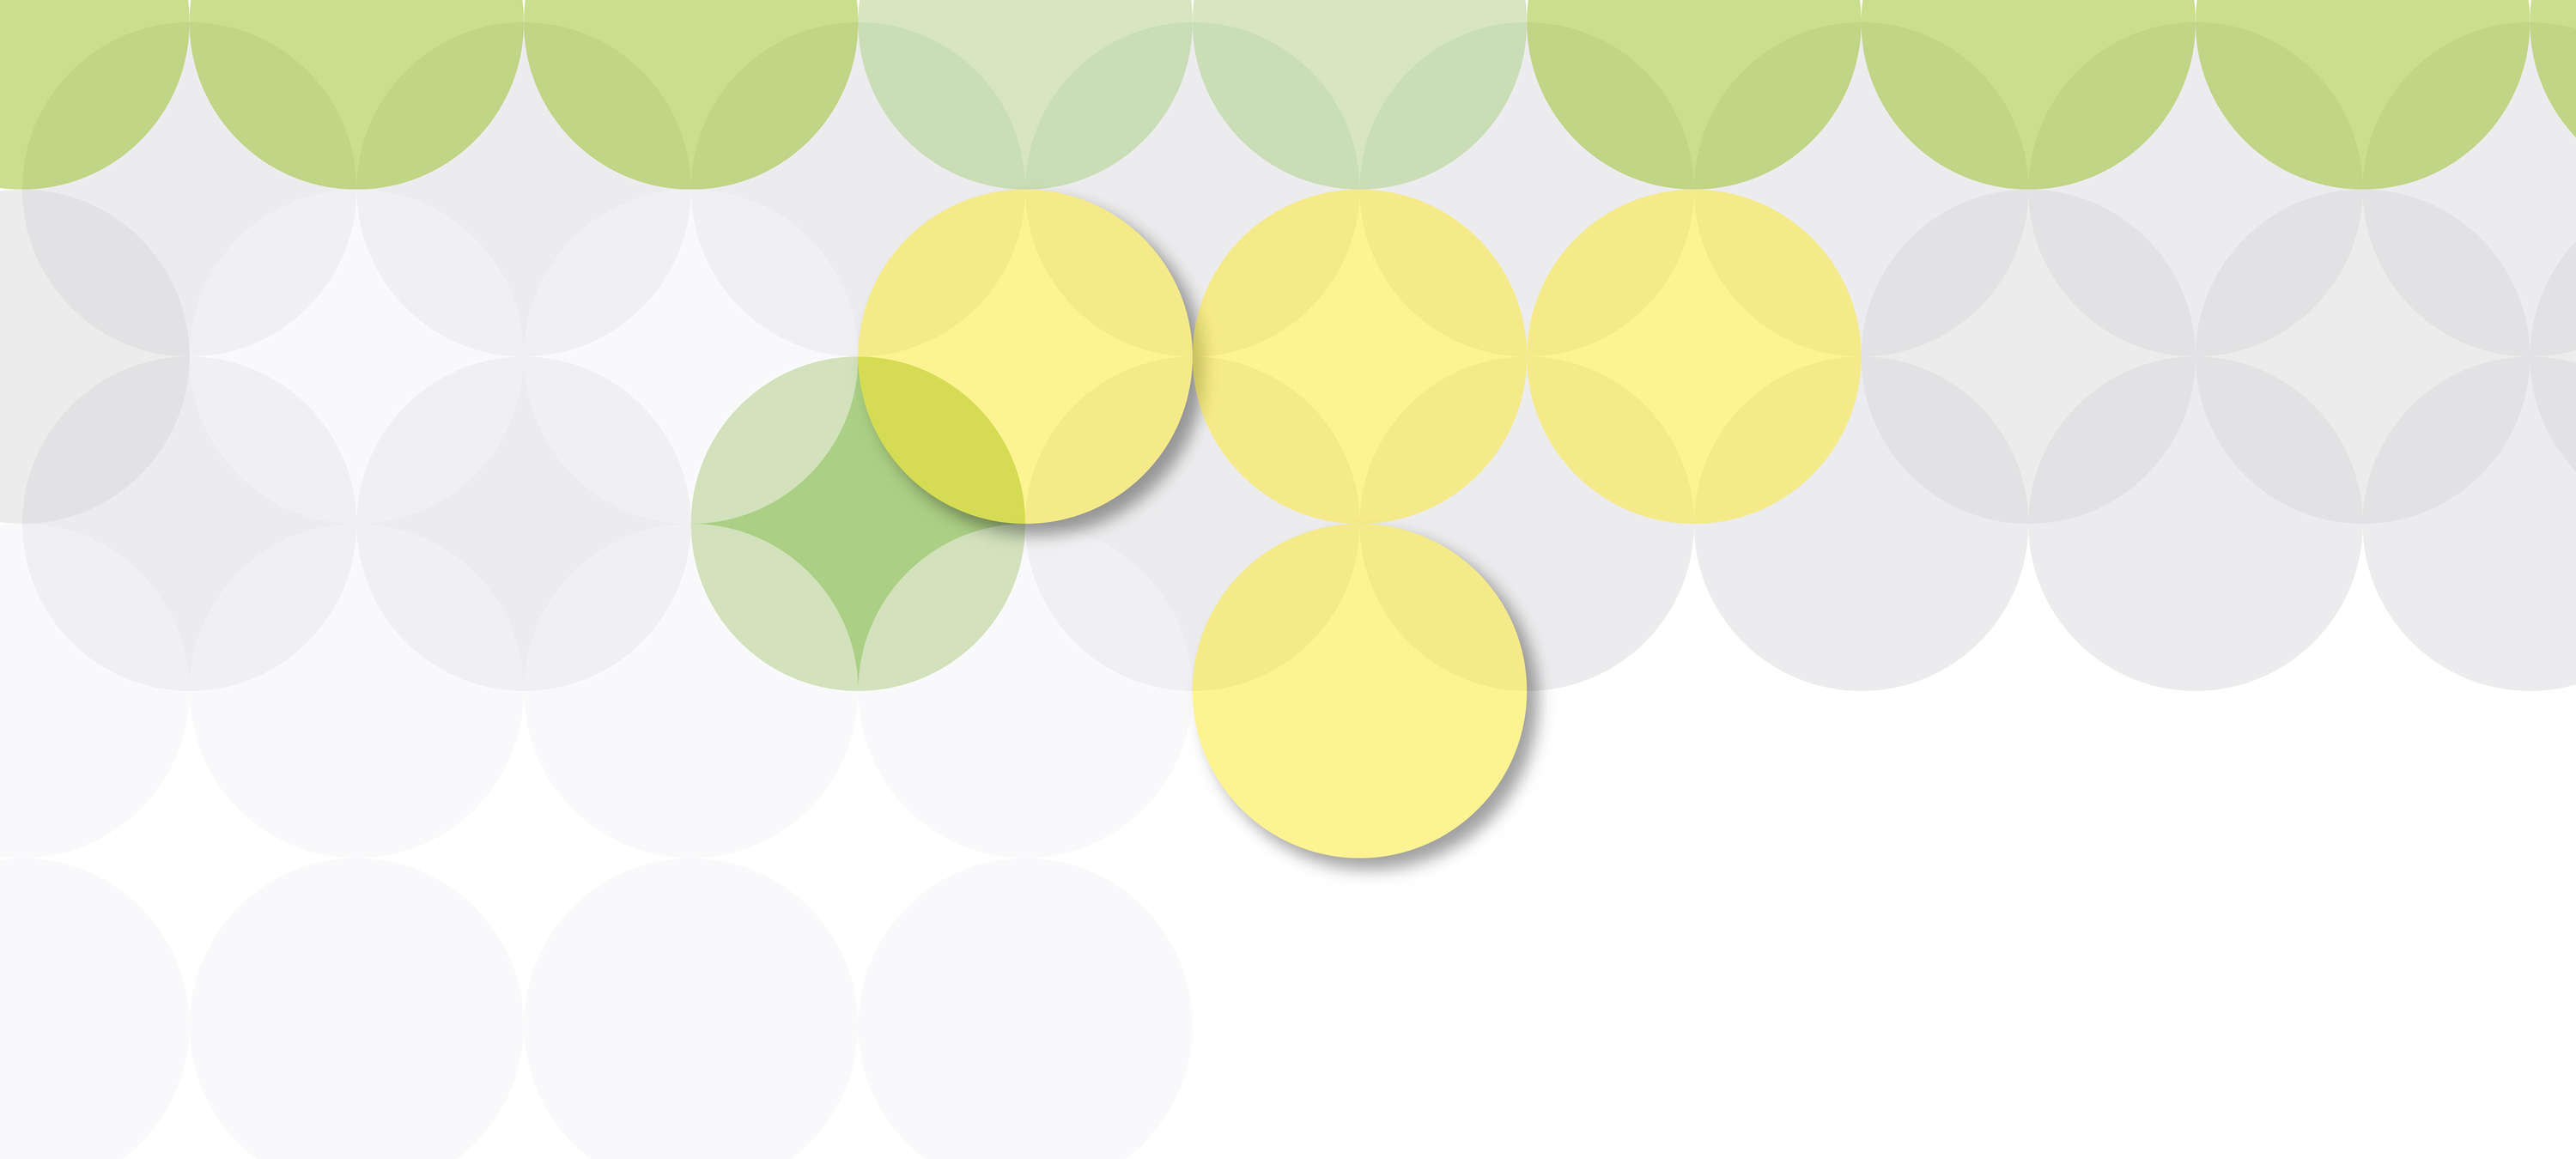             Fototapete Kreisdesign & grafisches Muster – Gelb, Grün, Weiß
        